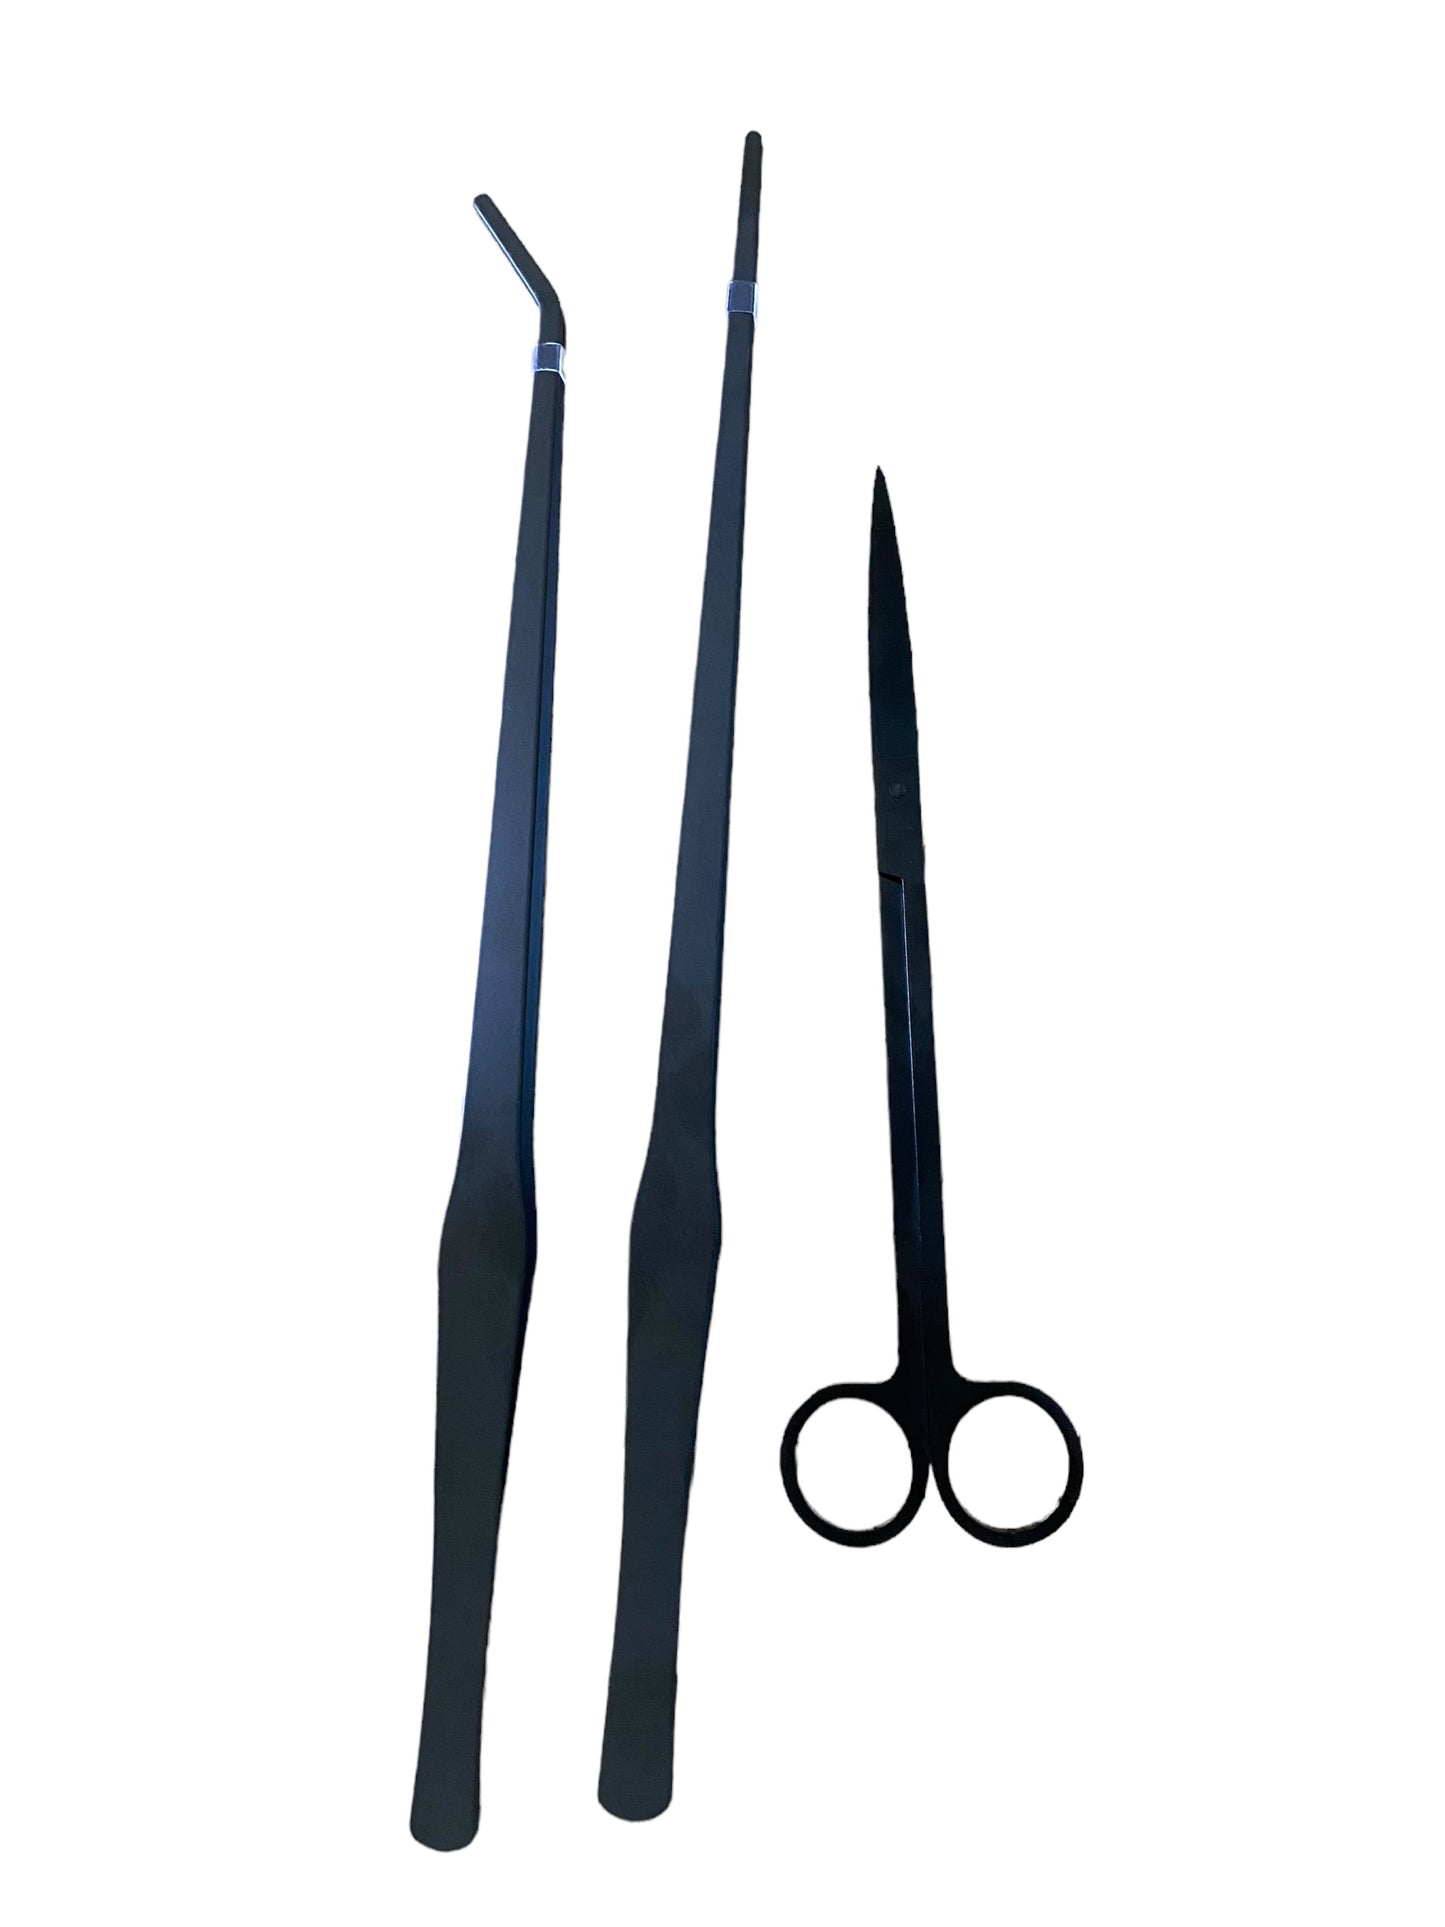 Terrarium tweezer combo - 38cm bended & straight + scissors